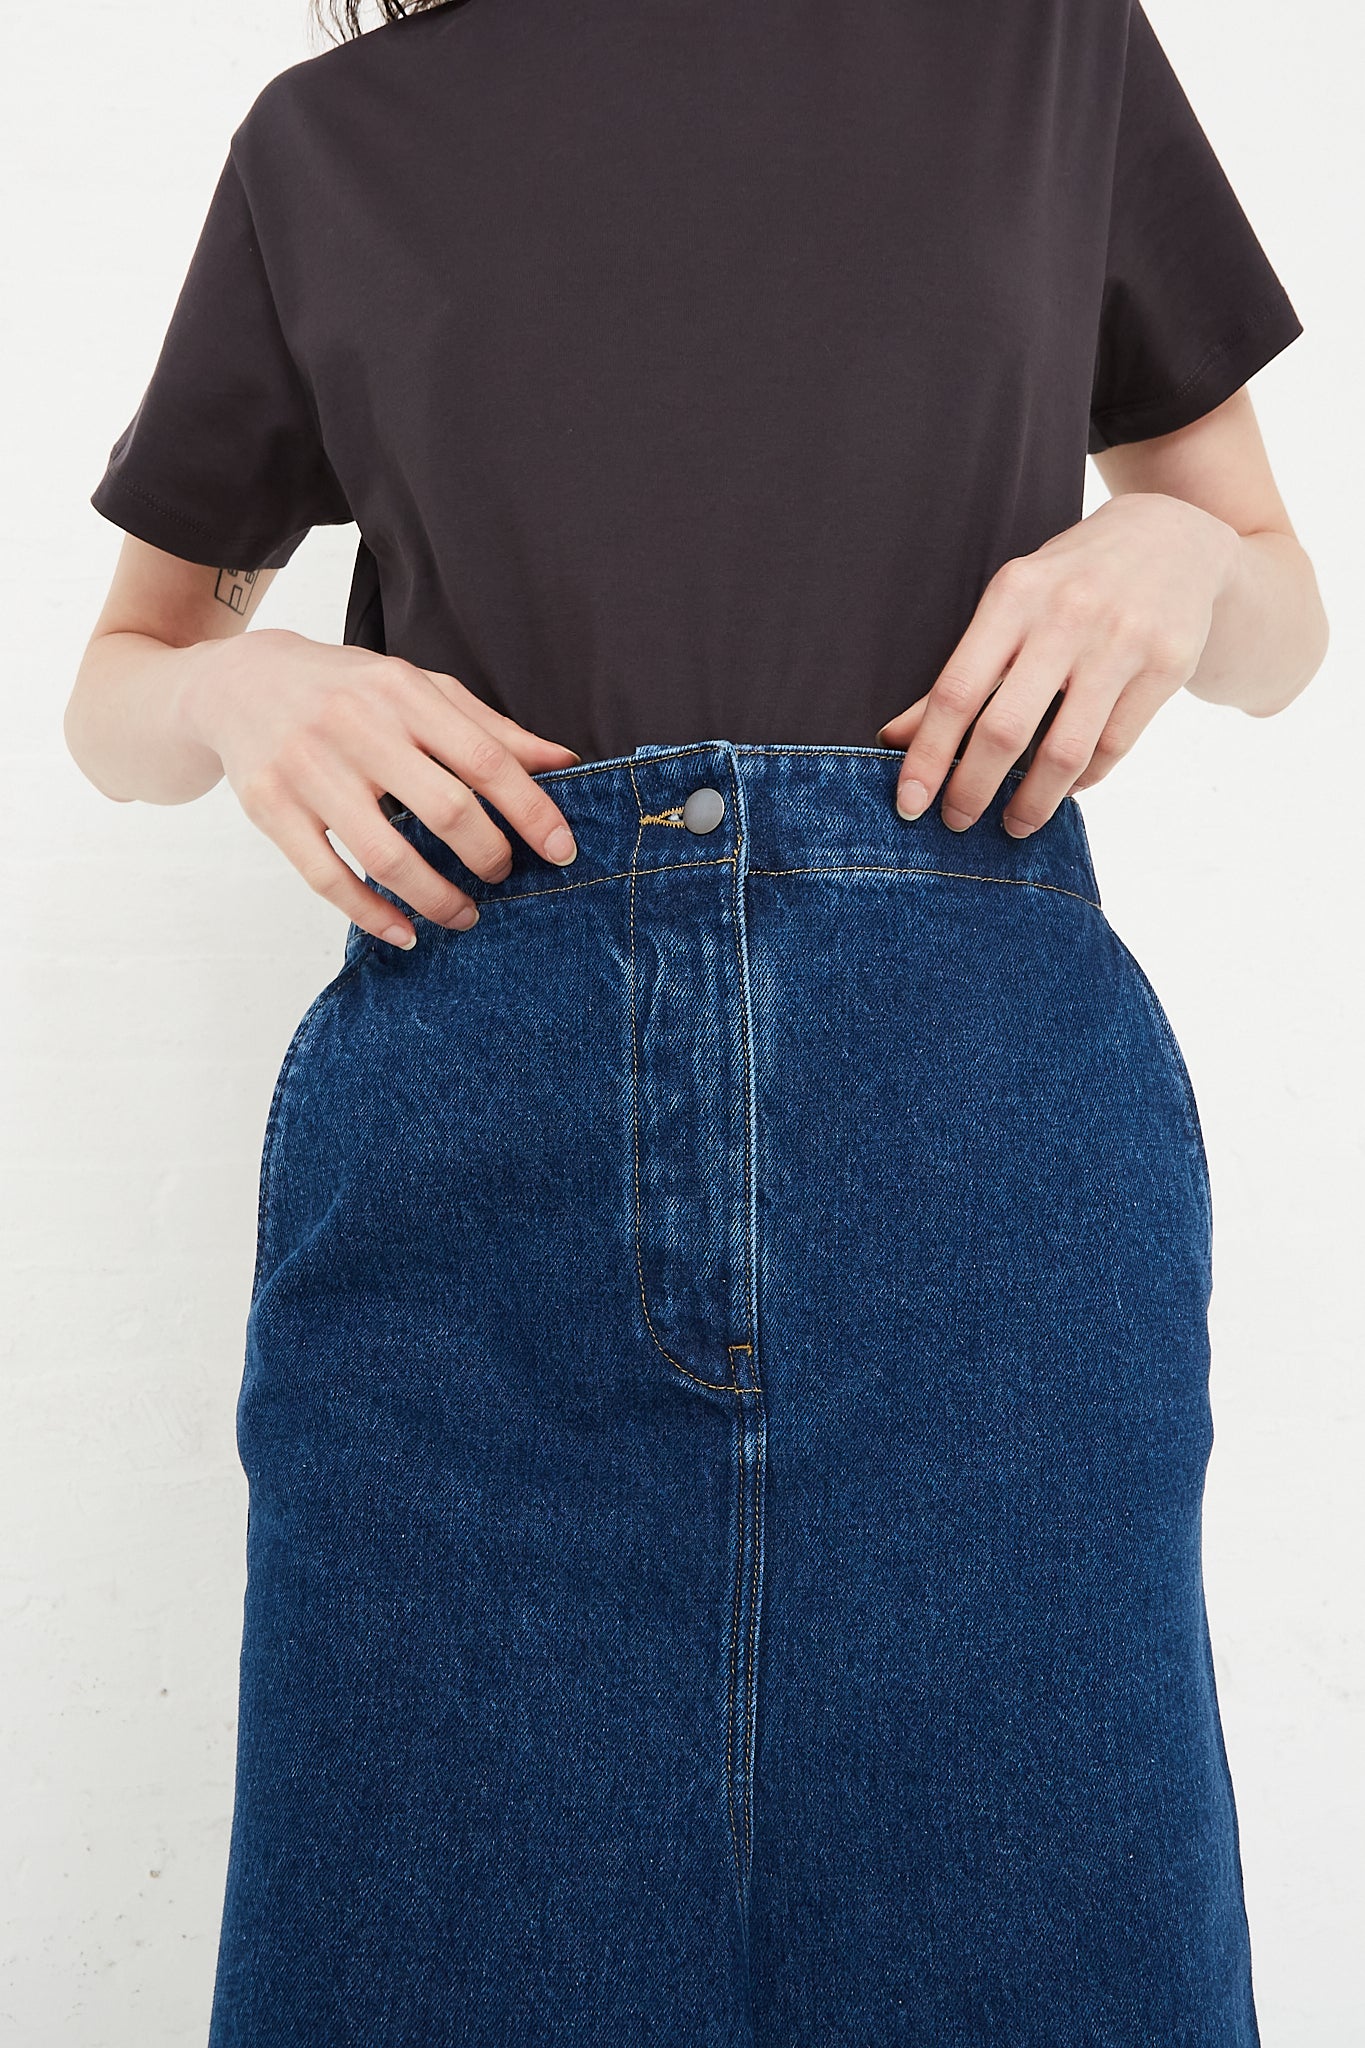 Studio Nicholson Preto Skirt in Indigo Wash front waist detail